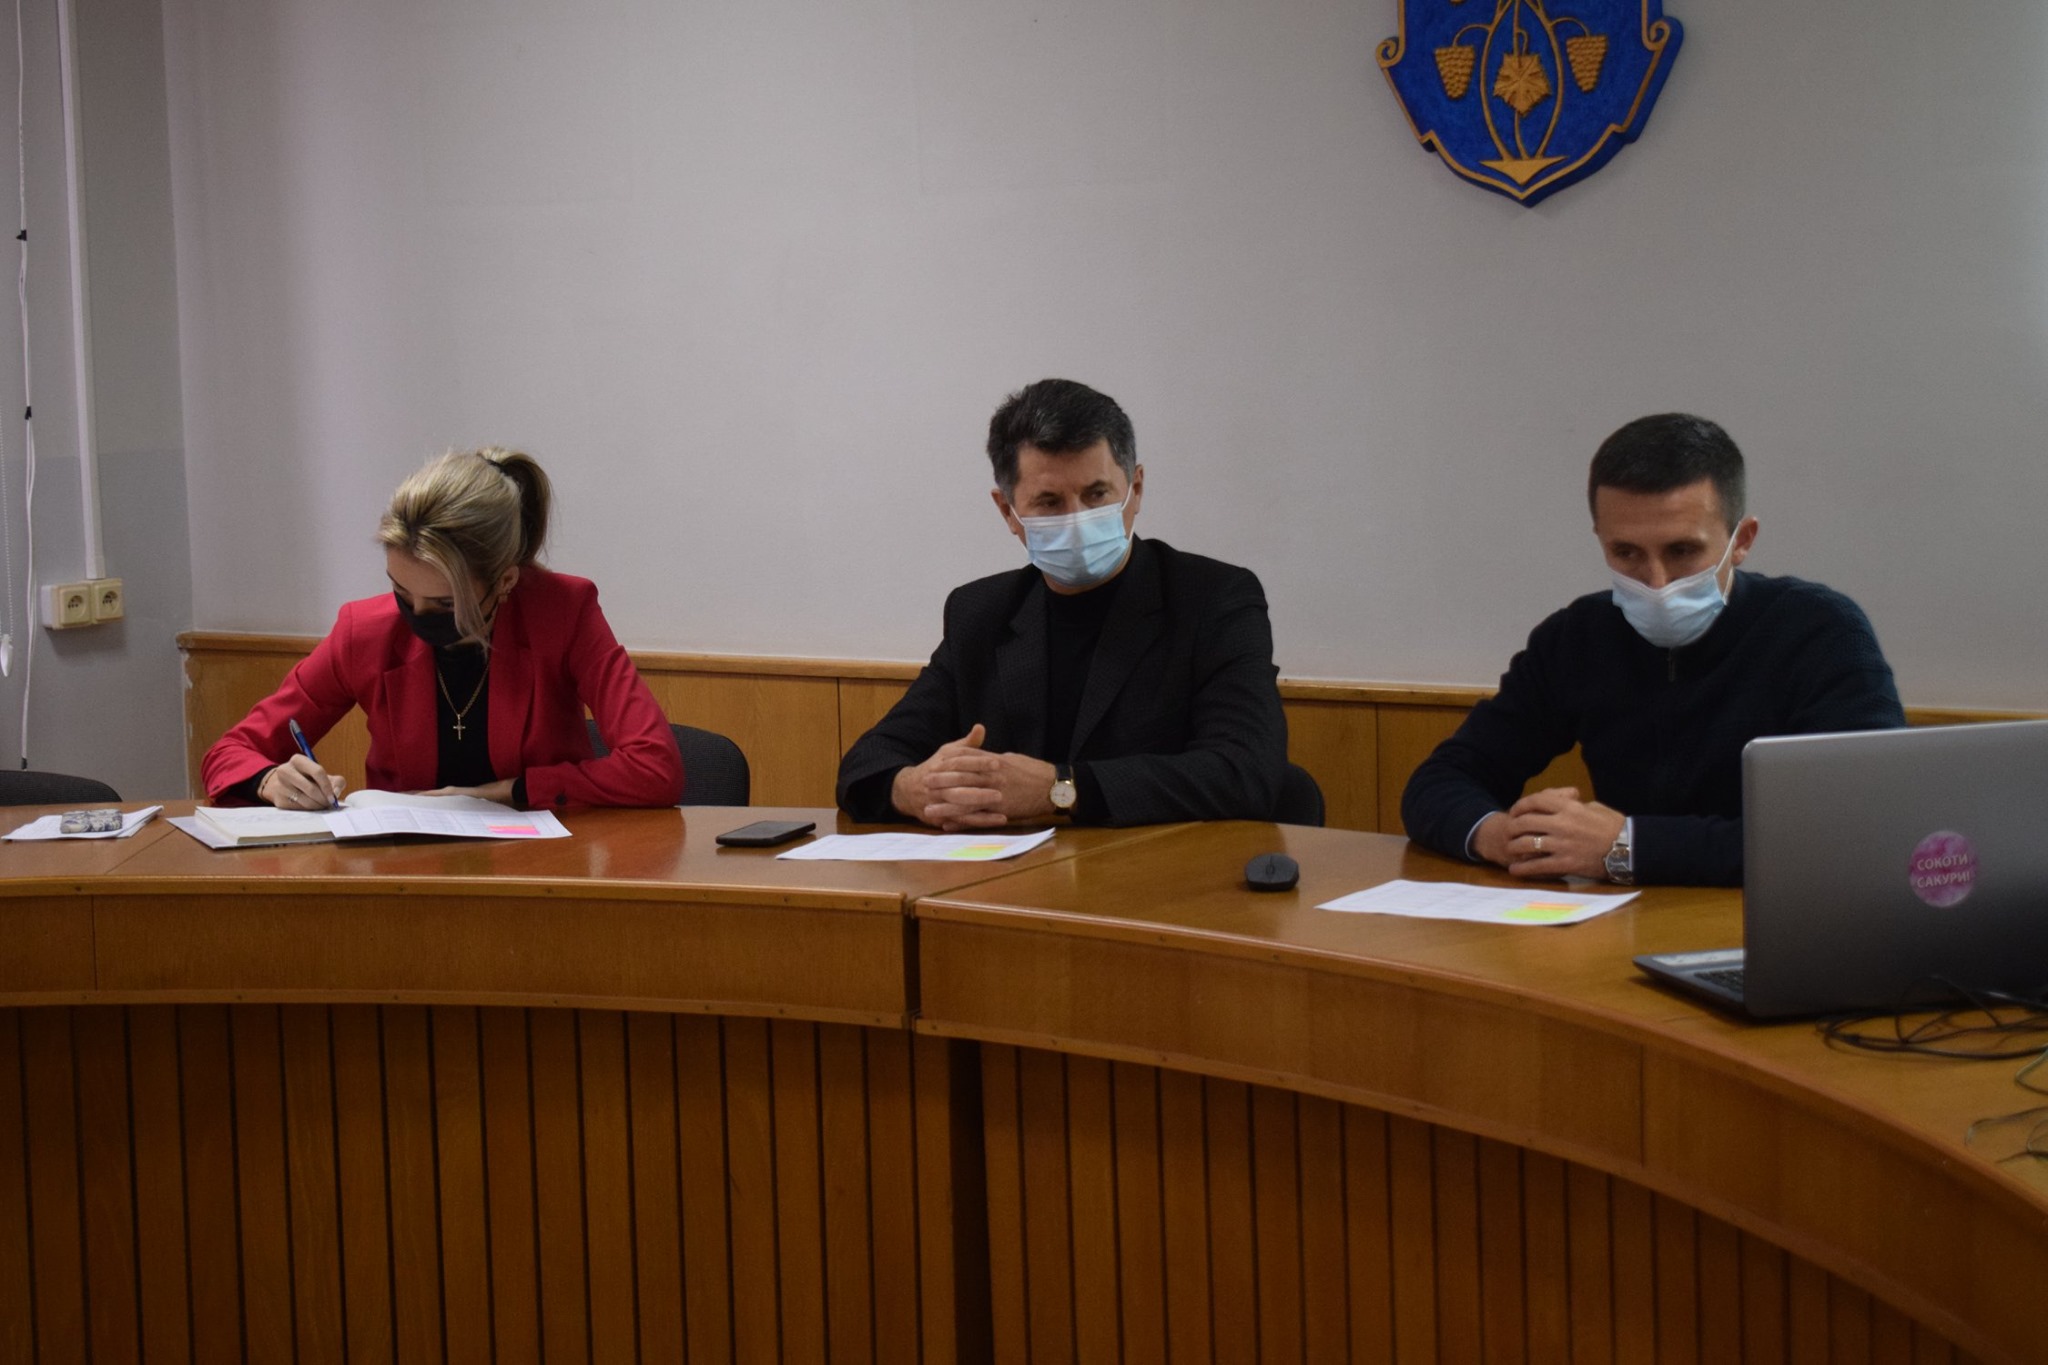 В Ужгороде определено 8 проектов-победителей конкурса «Бюджет общественной инициативы», на реализацию которого в следующем году запланировано 5 миллионов гривен из городского бюджета.